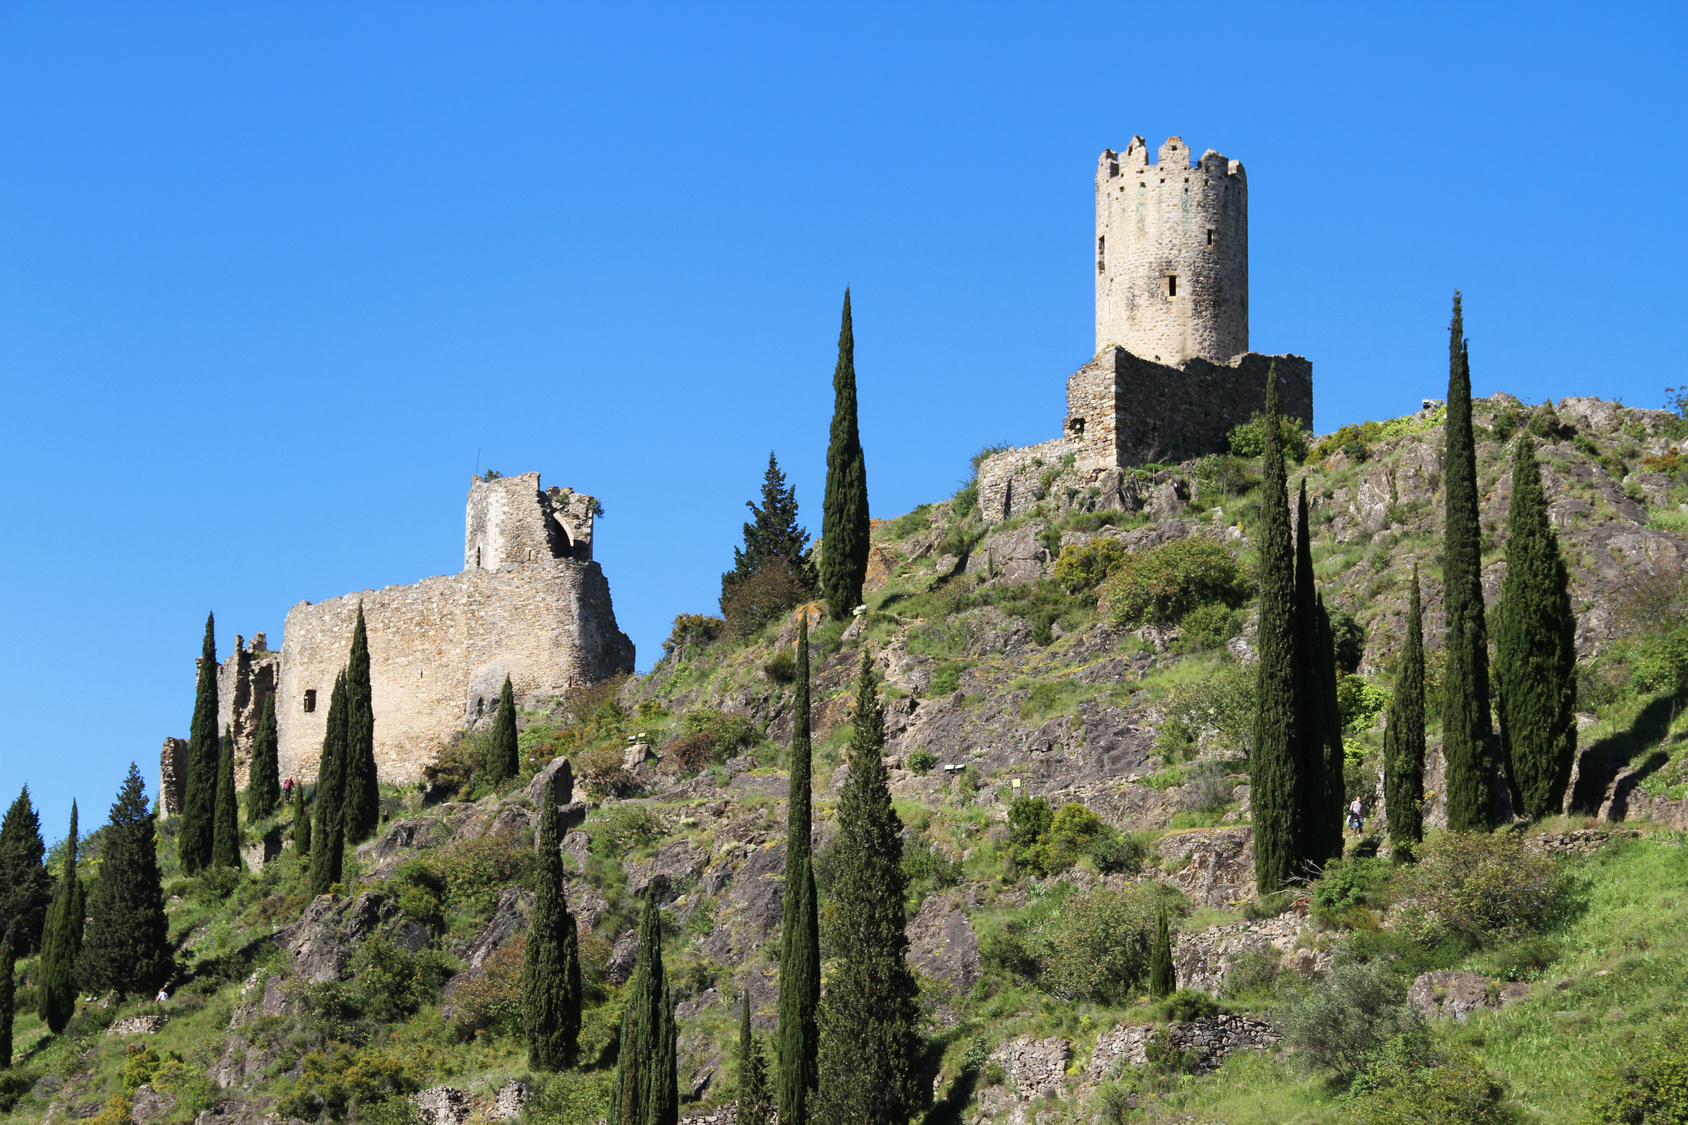 Vestige d'une forteresse en pays cathare. © stephane41, Fotolia